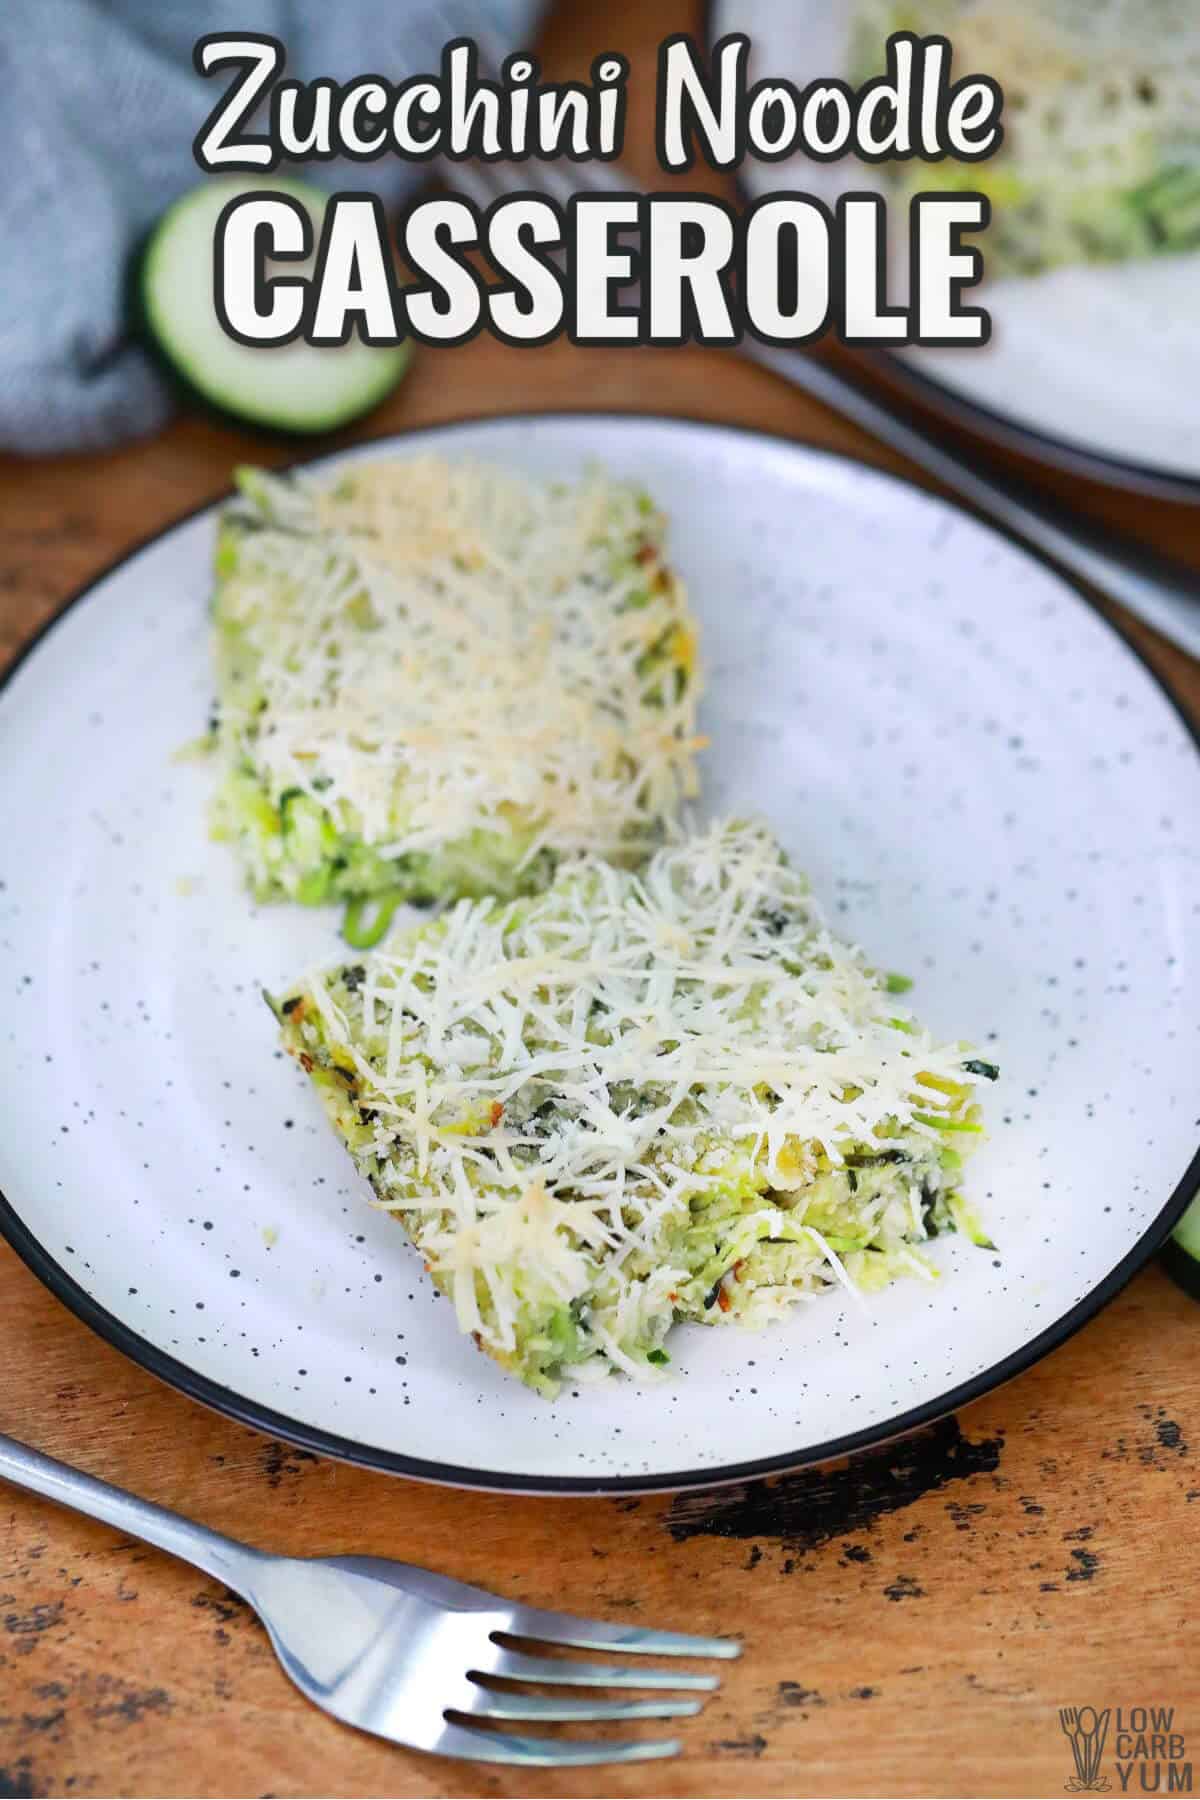 zucchini noodle casserole recipe cover image